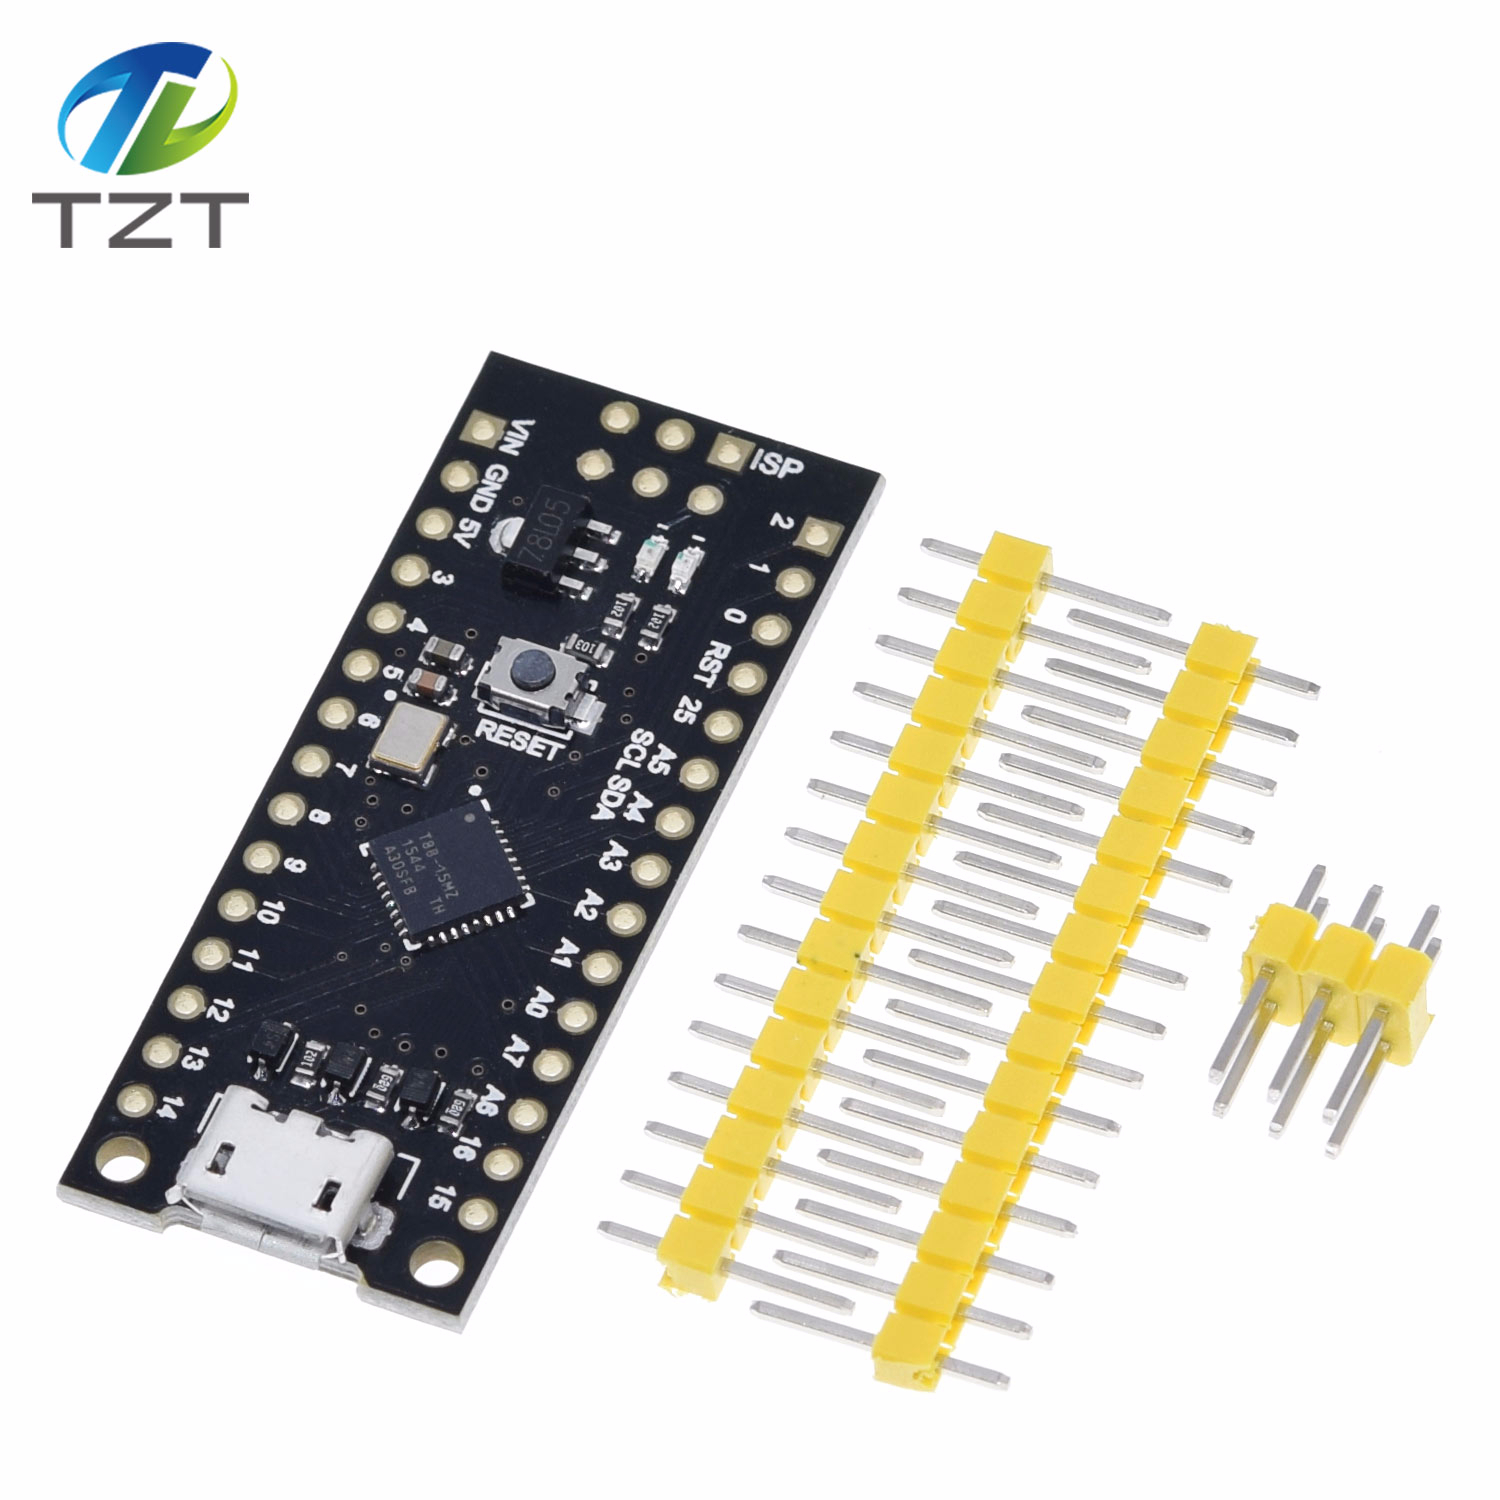 TZT ATTINY88 micro development board 16Mhz /Digispark ATTINY85 Upgraded /NANO V3.0 ATmega328 Extended Compatible for Arduino